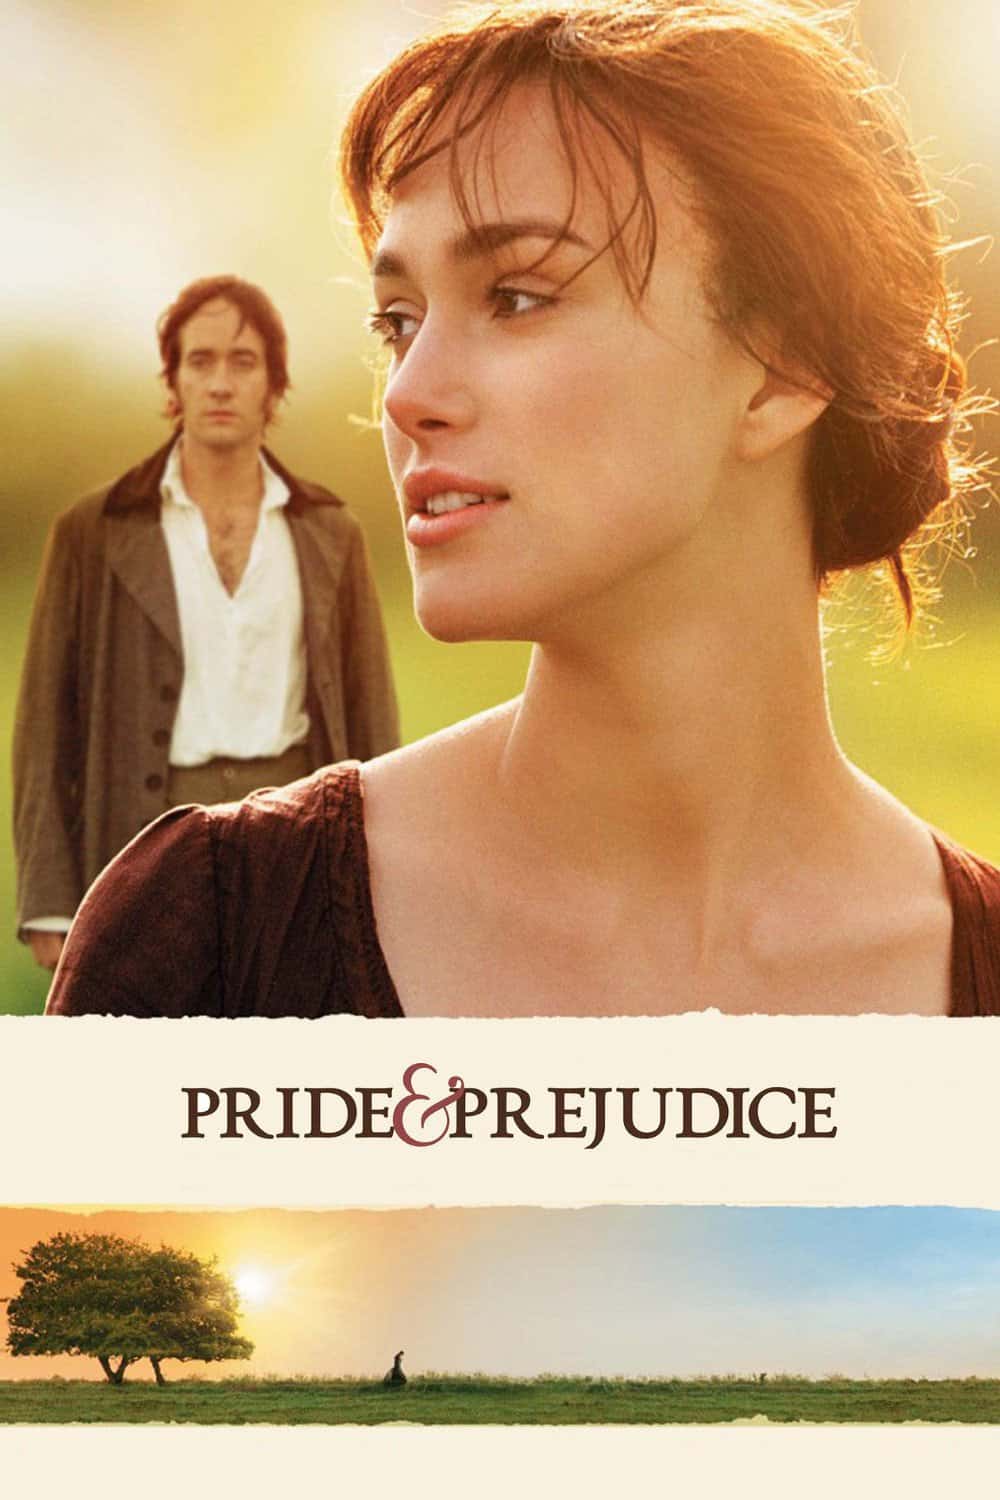 Pride and Prejudice, 2005 